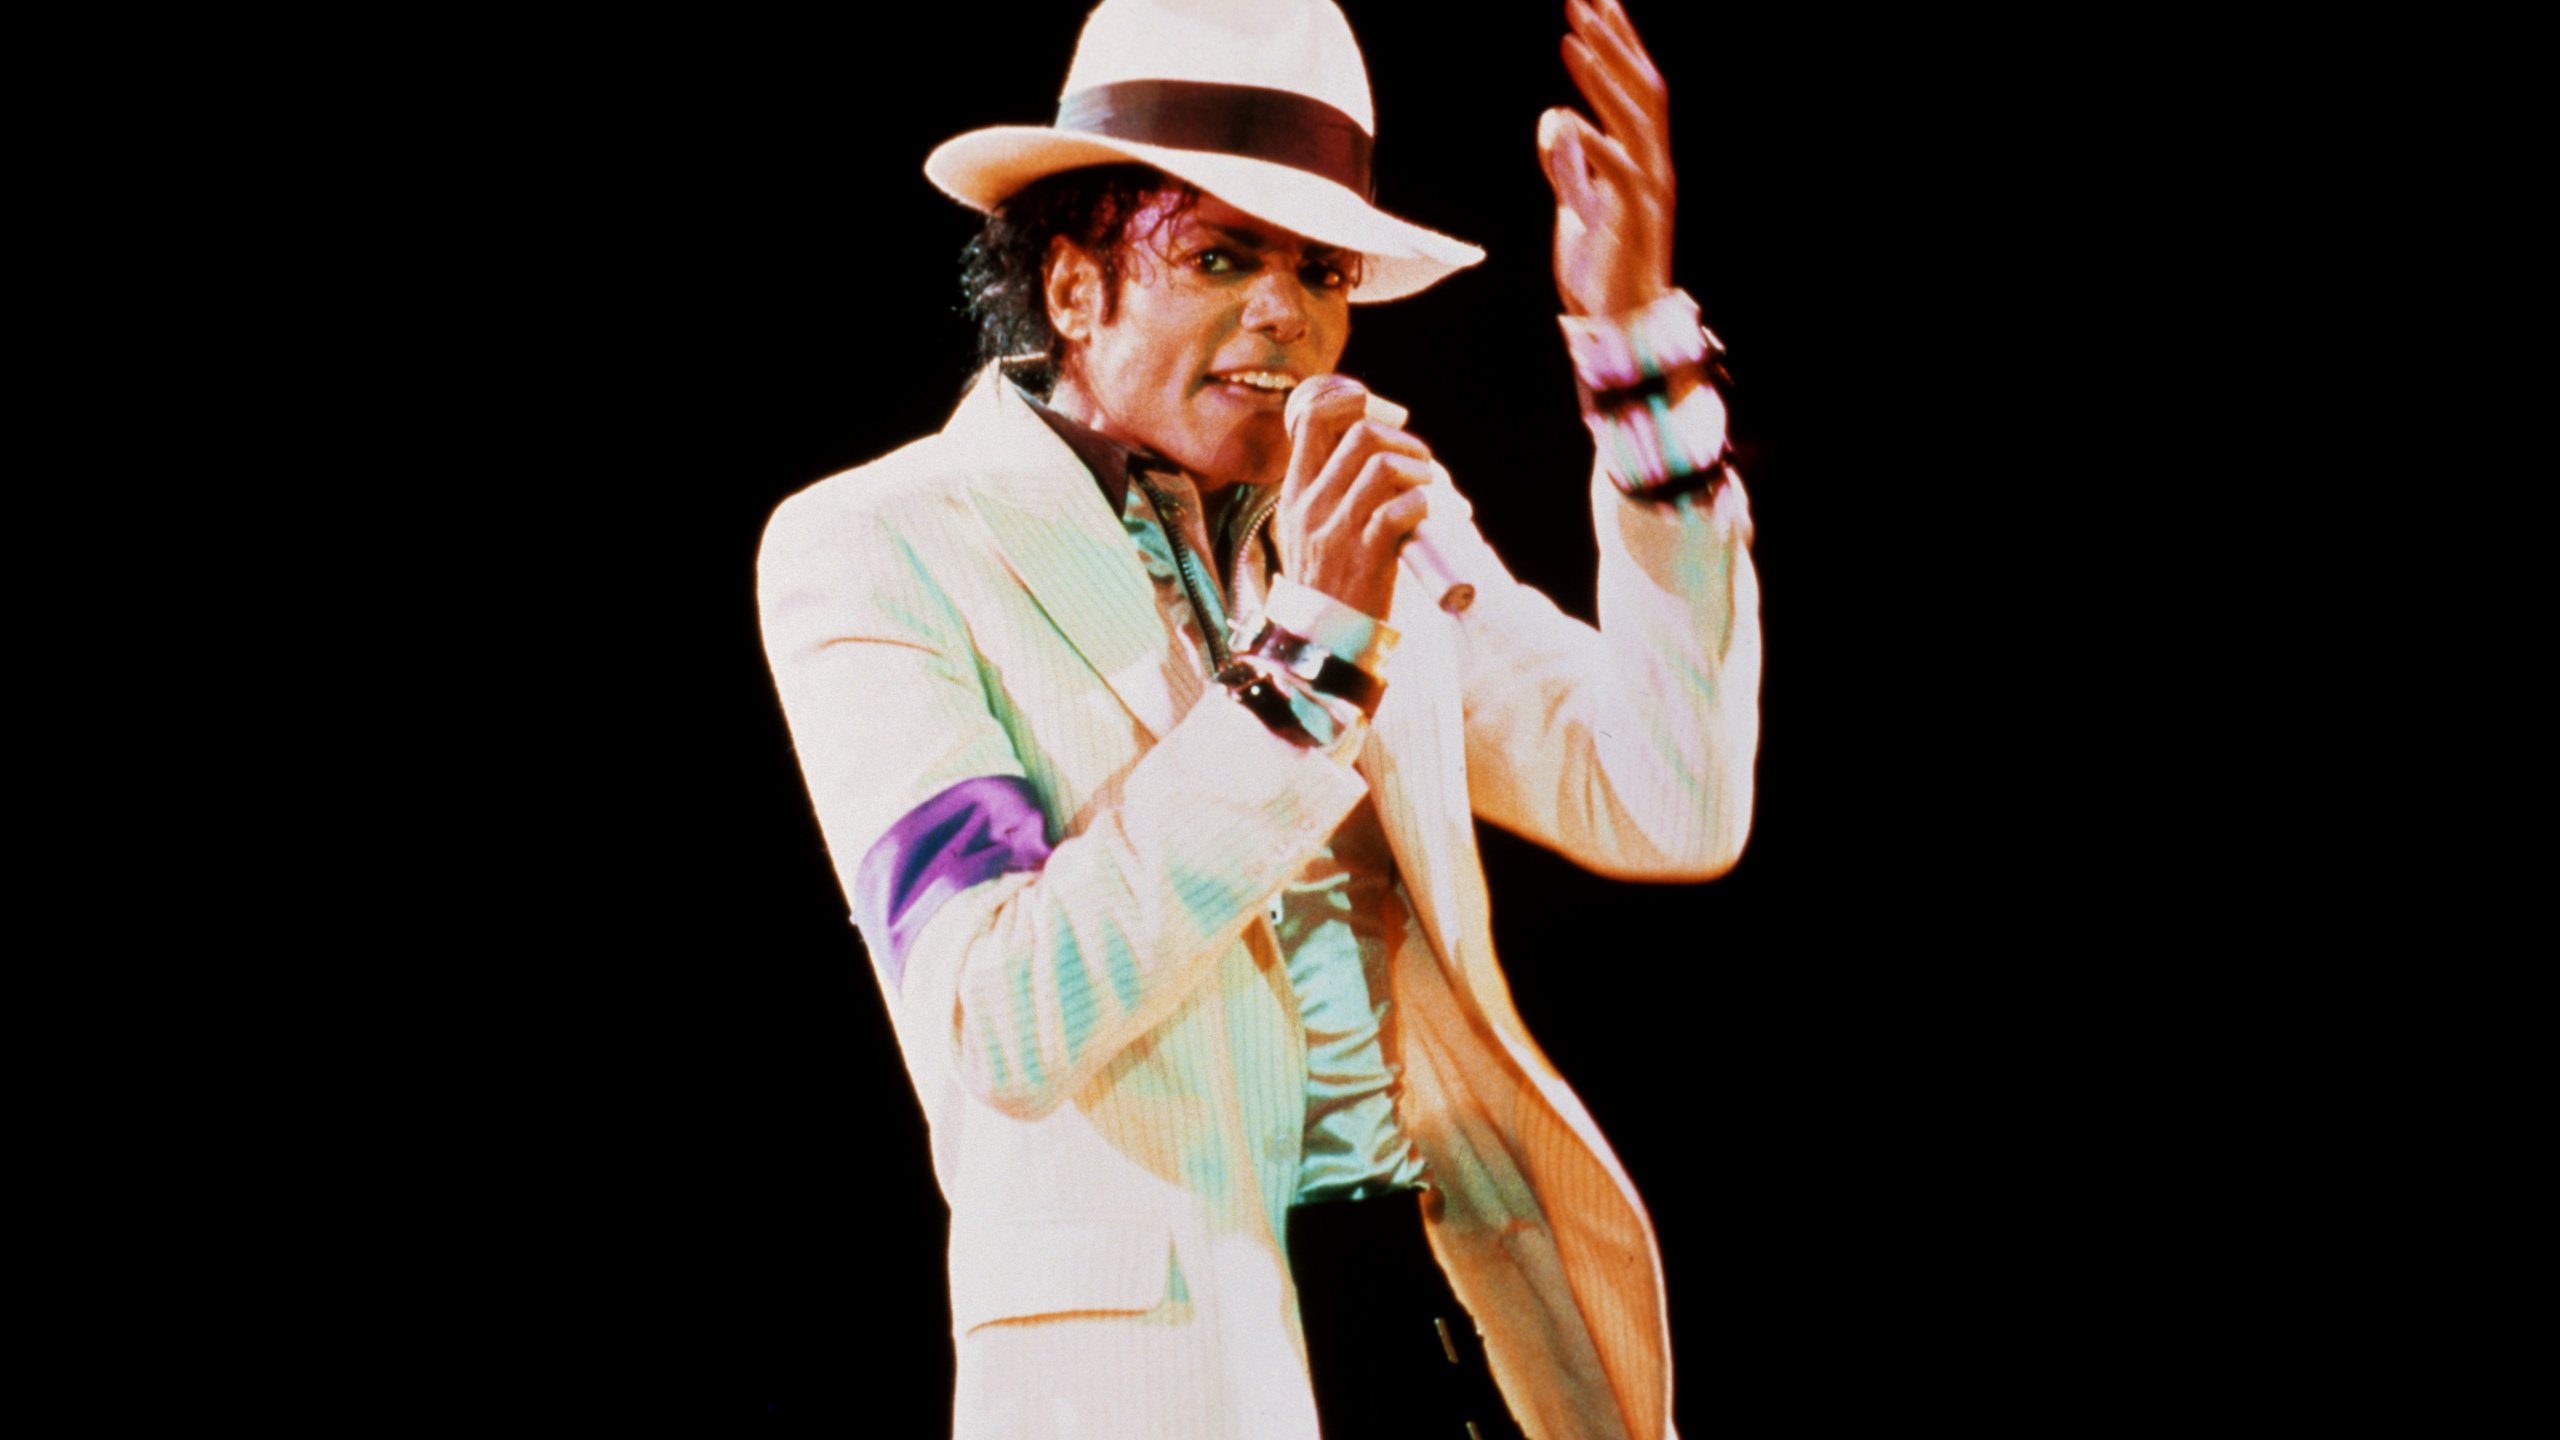 Michael Jackson, Leistung, Musik Künstler, Darstellende Kunst, Veranstaltung. Wallpaper in 2560x1440 Resolution